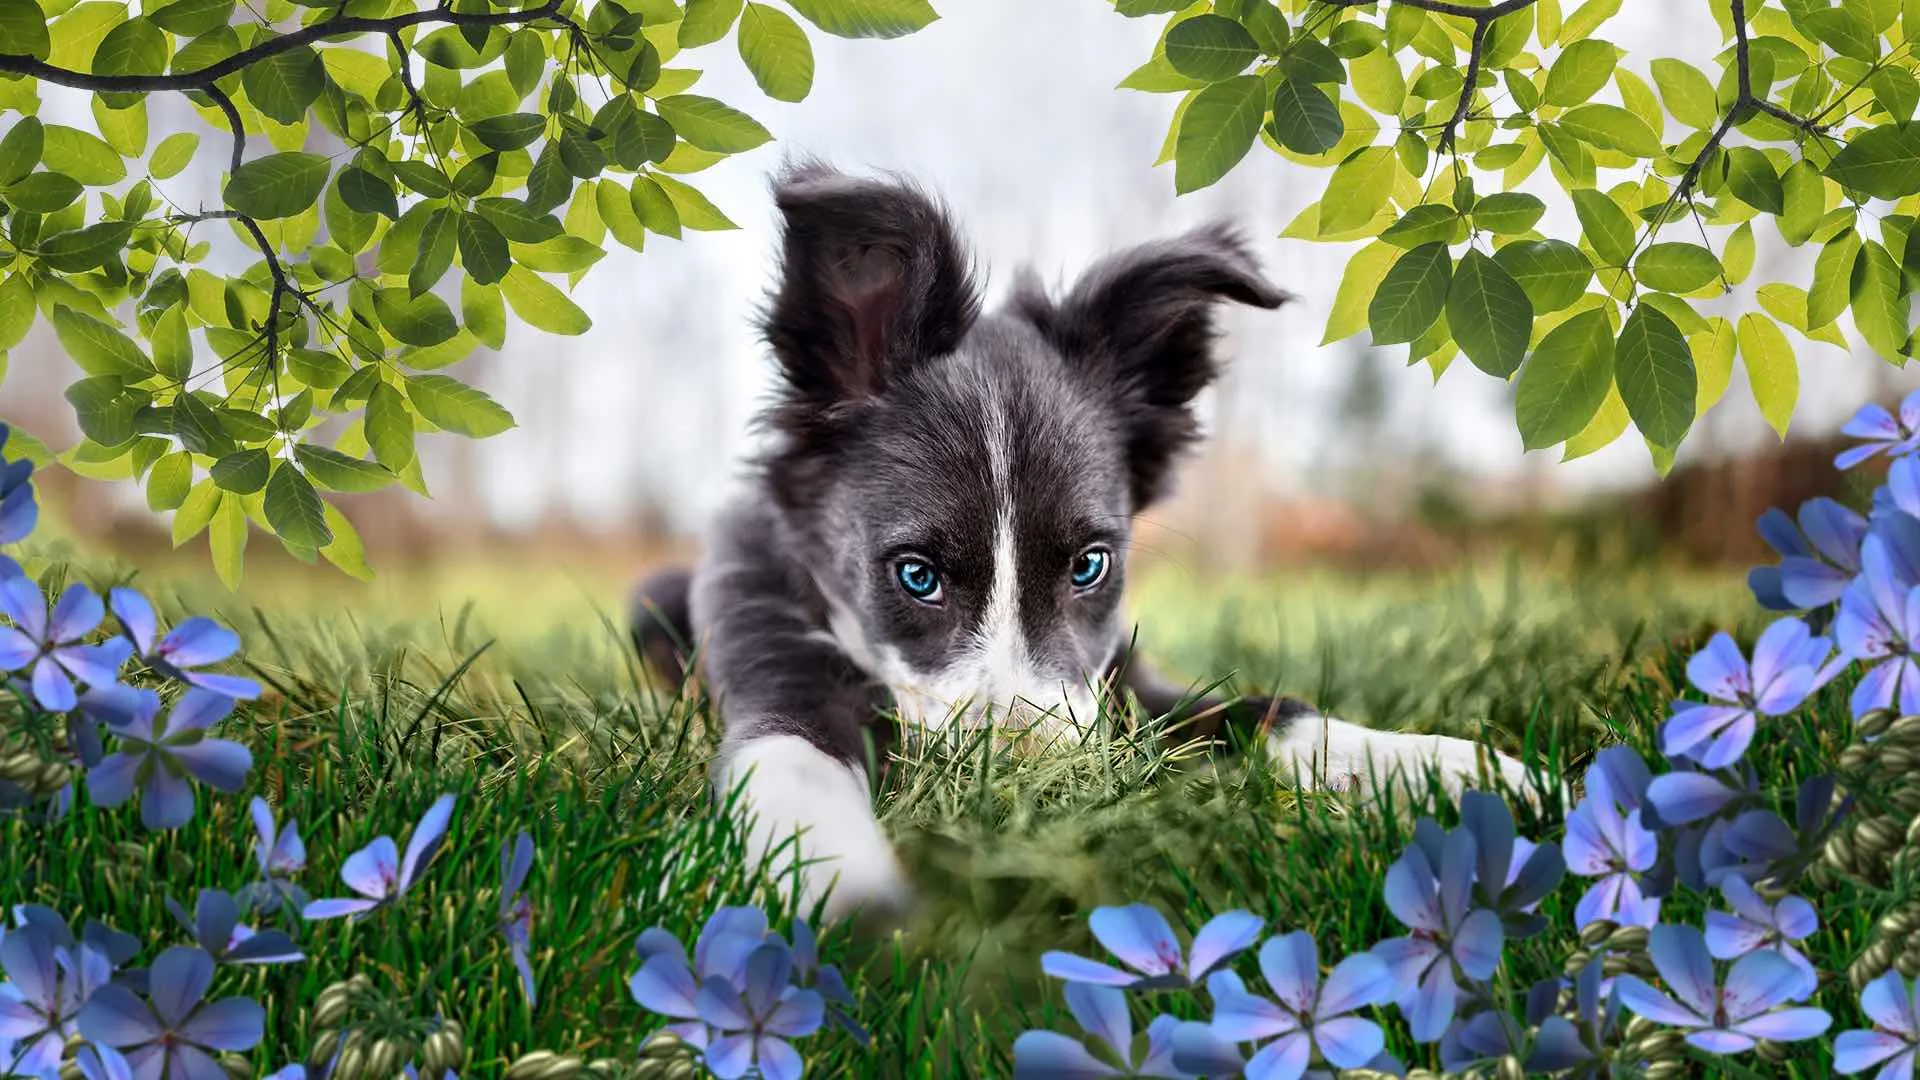 یک سگ بامزه با چشم آبی روز روشن منظره گل